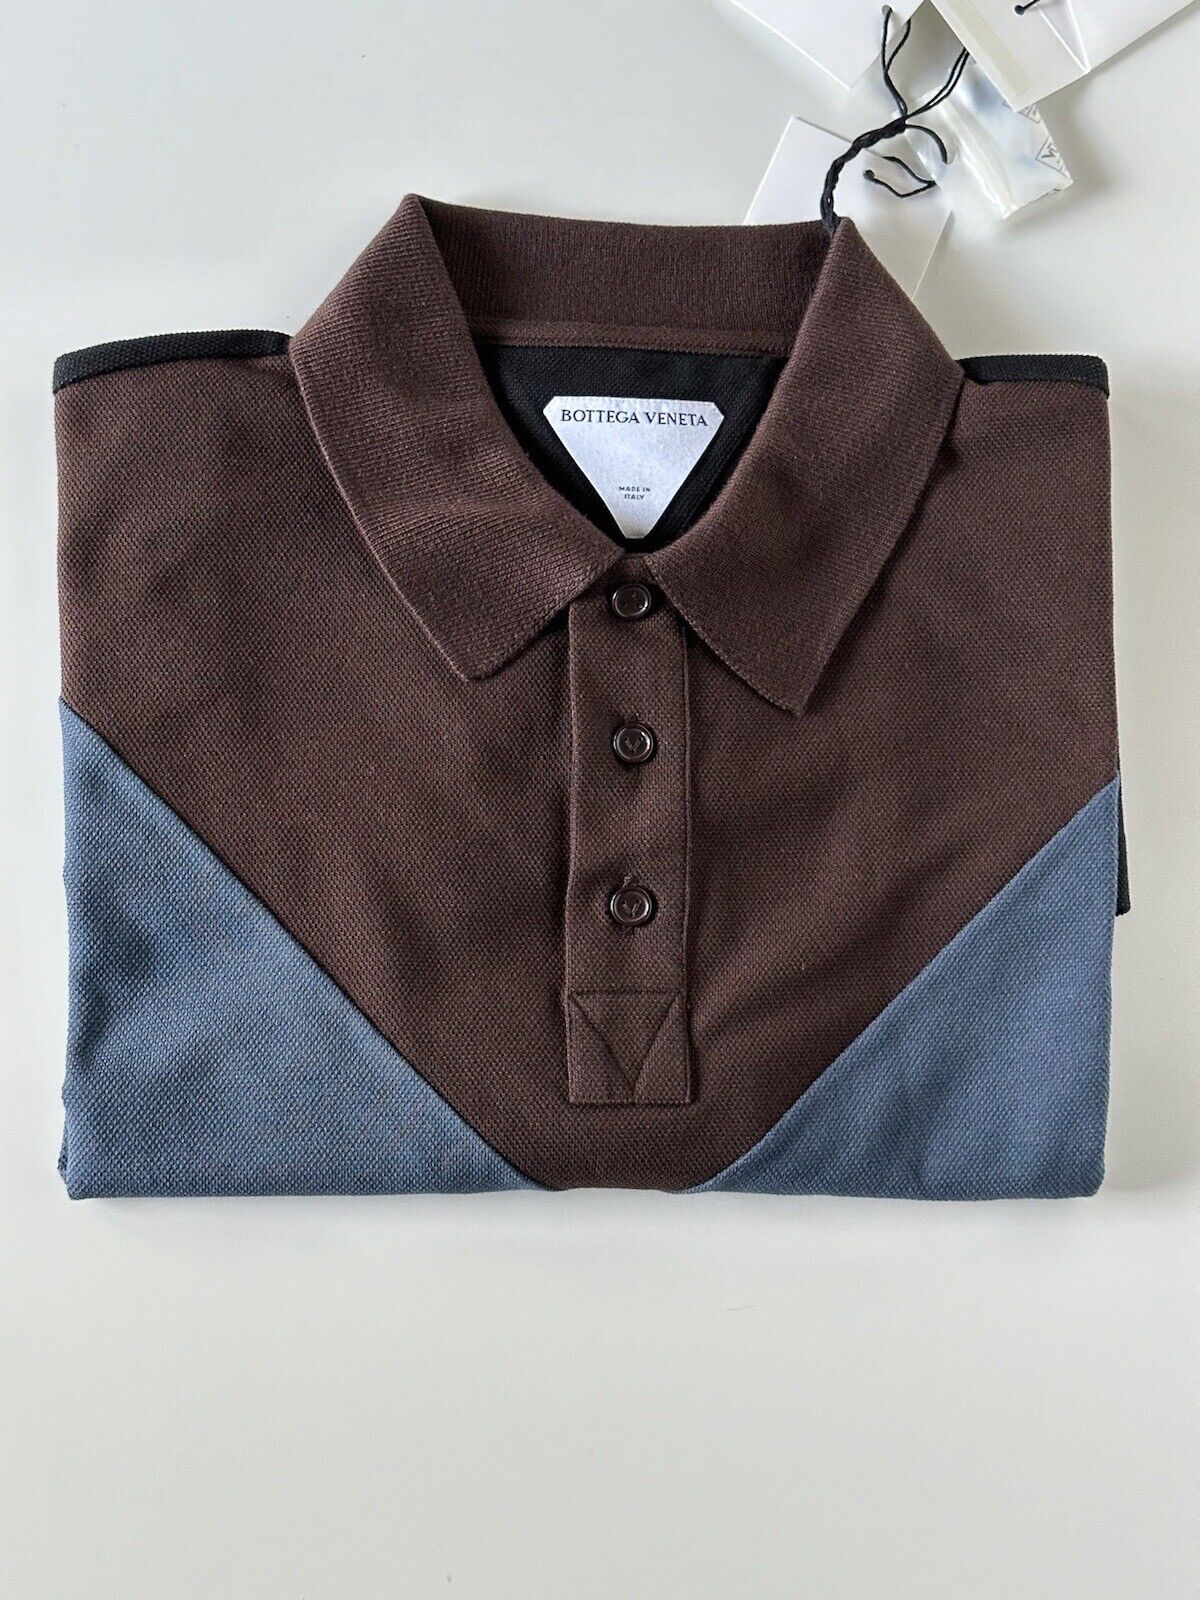 NWT $700 Bottega Veneta Cotton Piquet Polo Multicolor Shirt S (Oversized) 704205